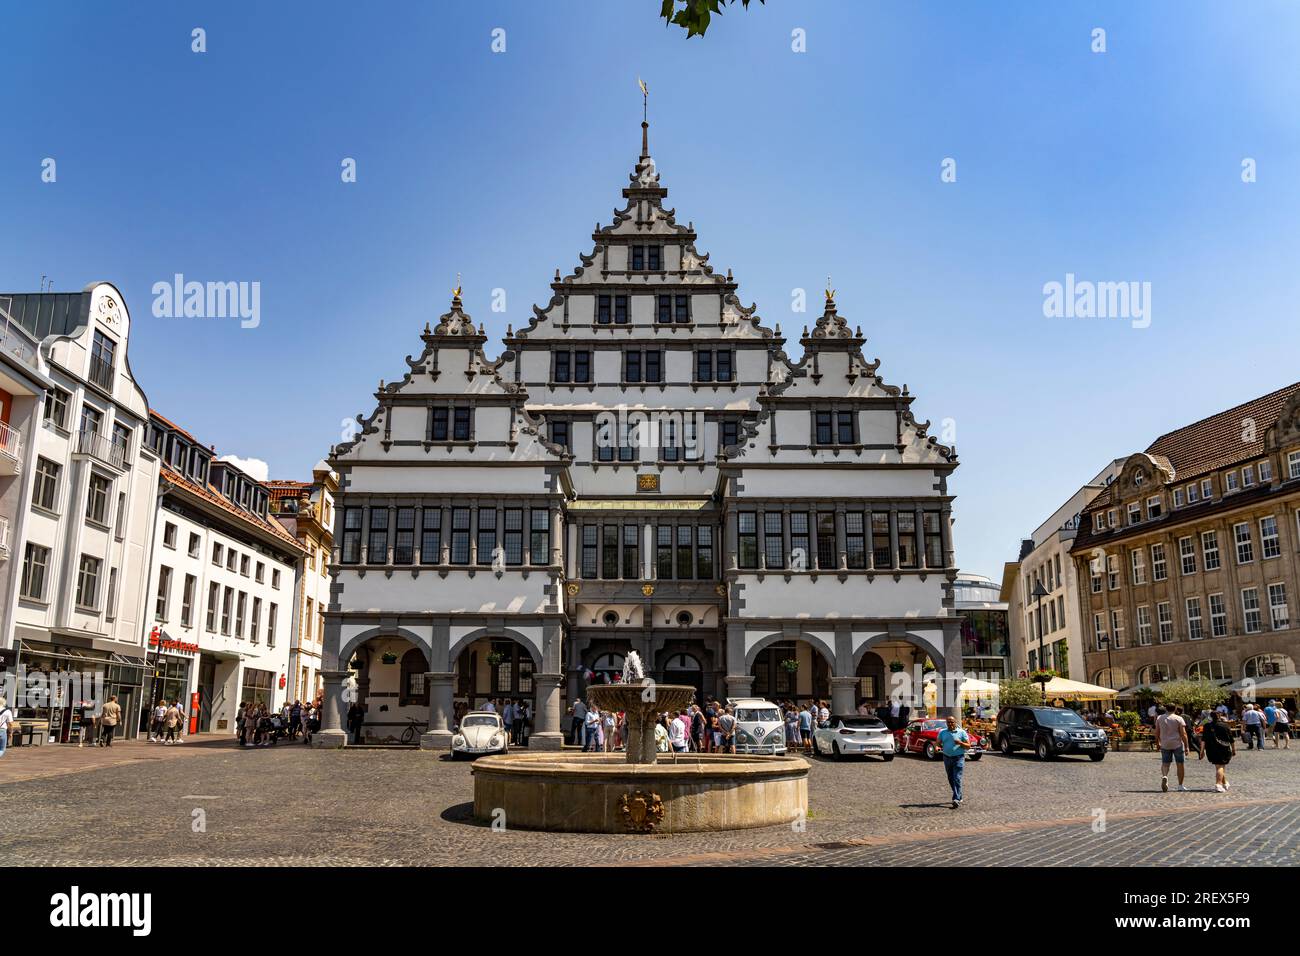 Das Rathaus in Paderborn, Nordrhein-Westfalen, Deutschland, Europa |  Paderborn Town hall, North Rhine-Westphalia, Germany, Europe Stock Photo